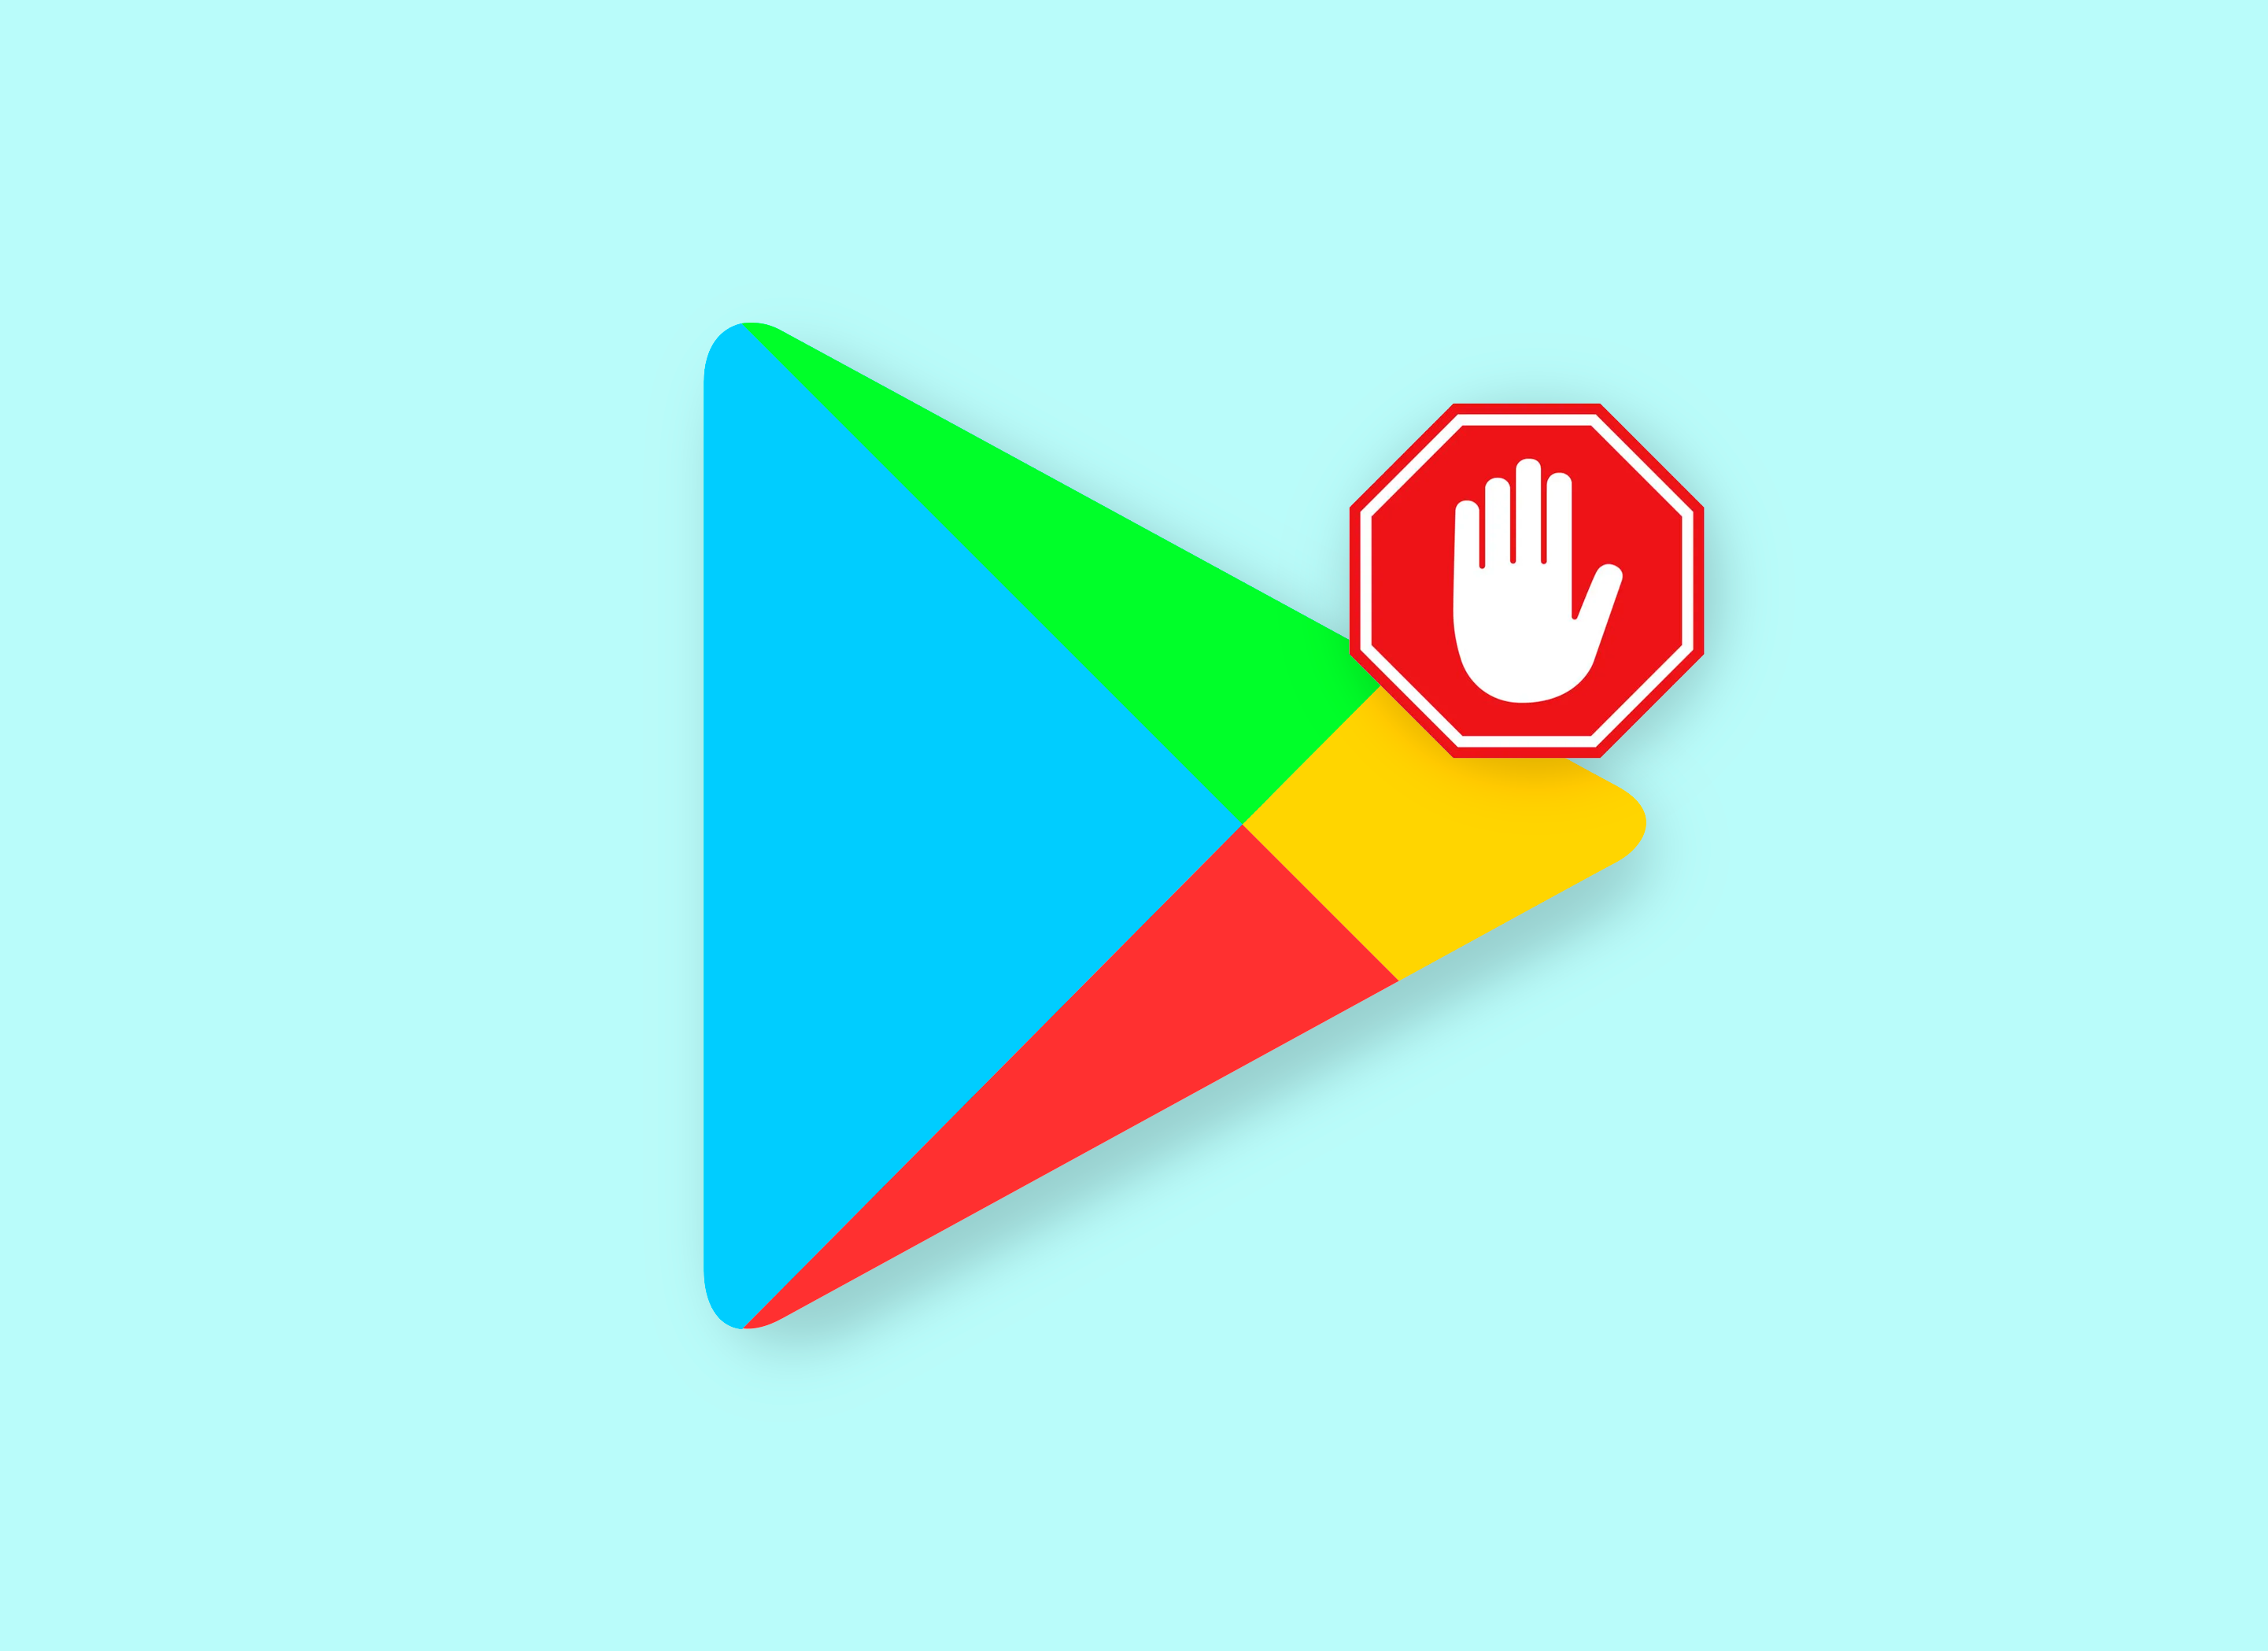 No instales esta App: haz caso al nuevo e importante aviso de Google Play